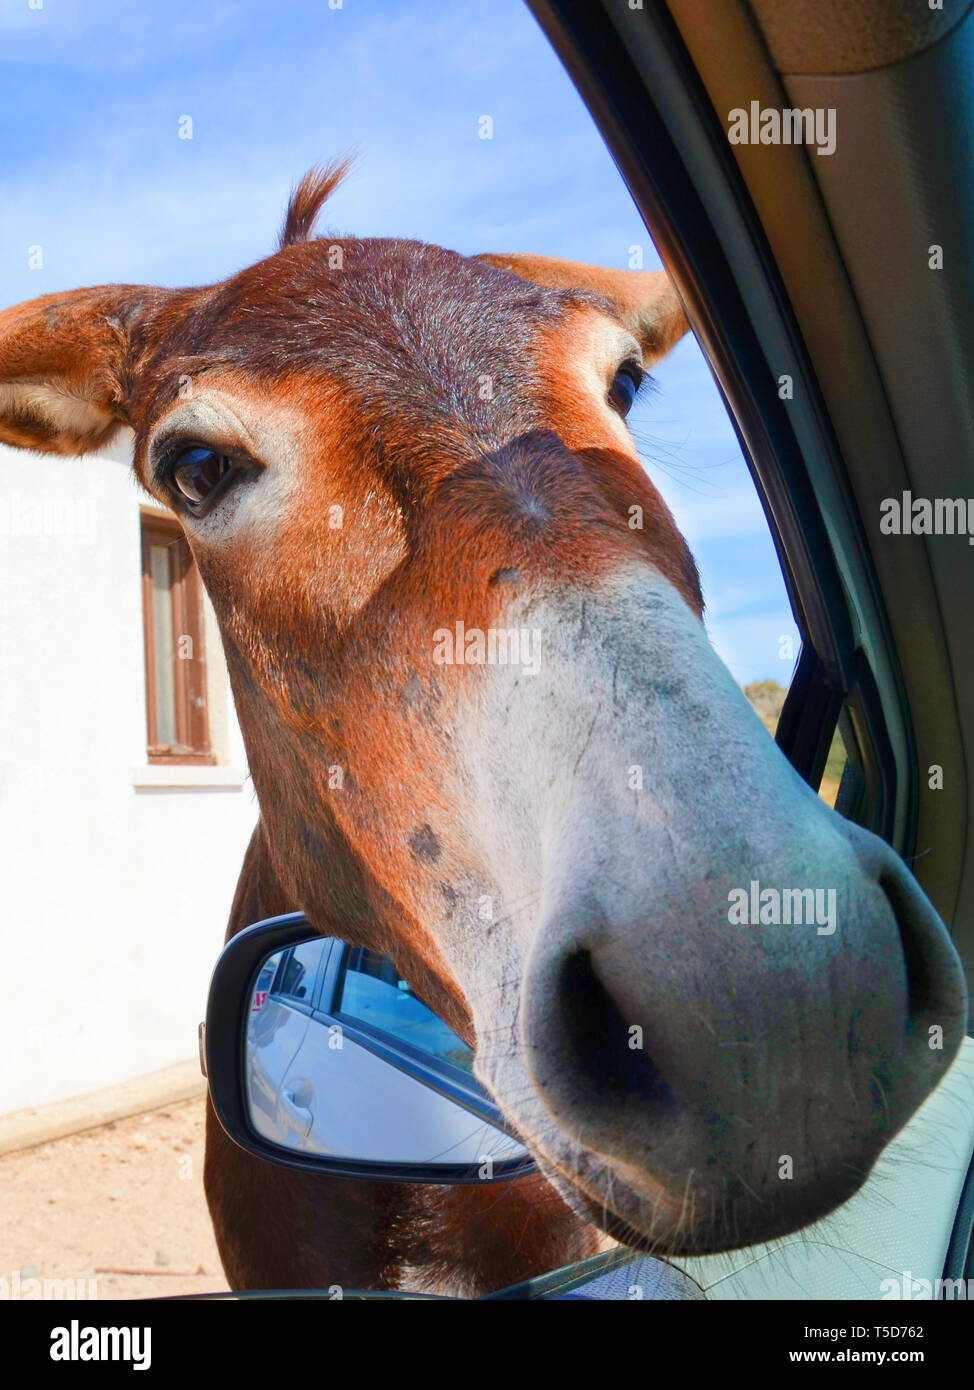 Adorable vertikale Foto von Esel Kopf schauen in das Auto durch geöffnete Fenster. In Karpaz Halbinsel, türkischen Nordzypern. Wilde Esel sind beliebte lokale Attraktion. Stockfoto